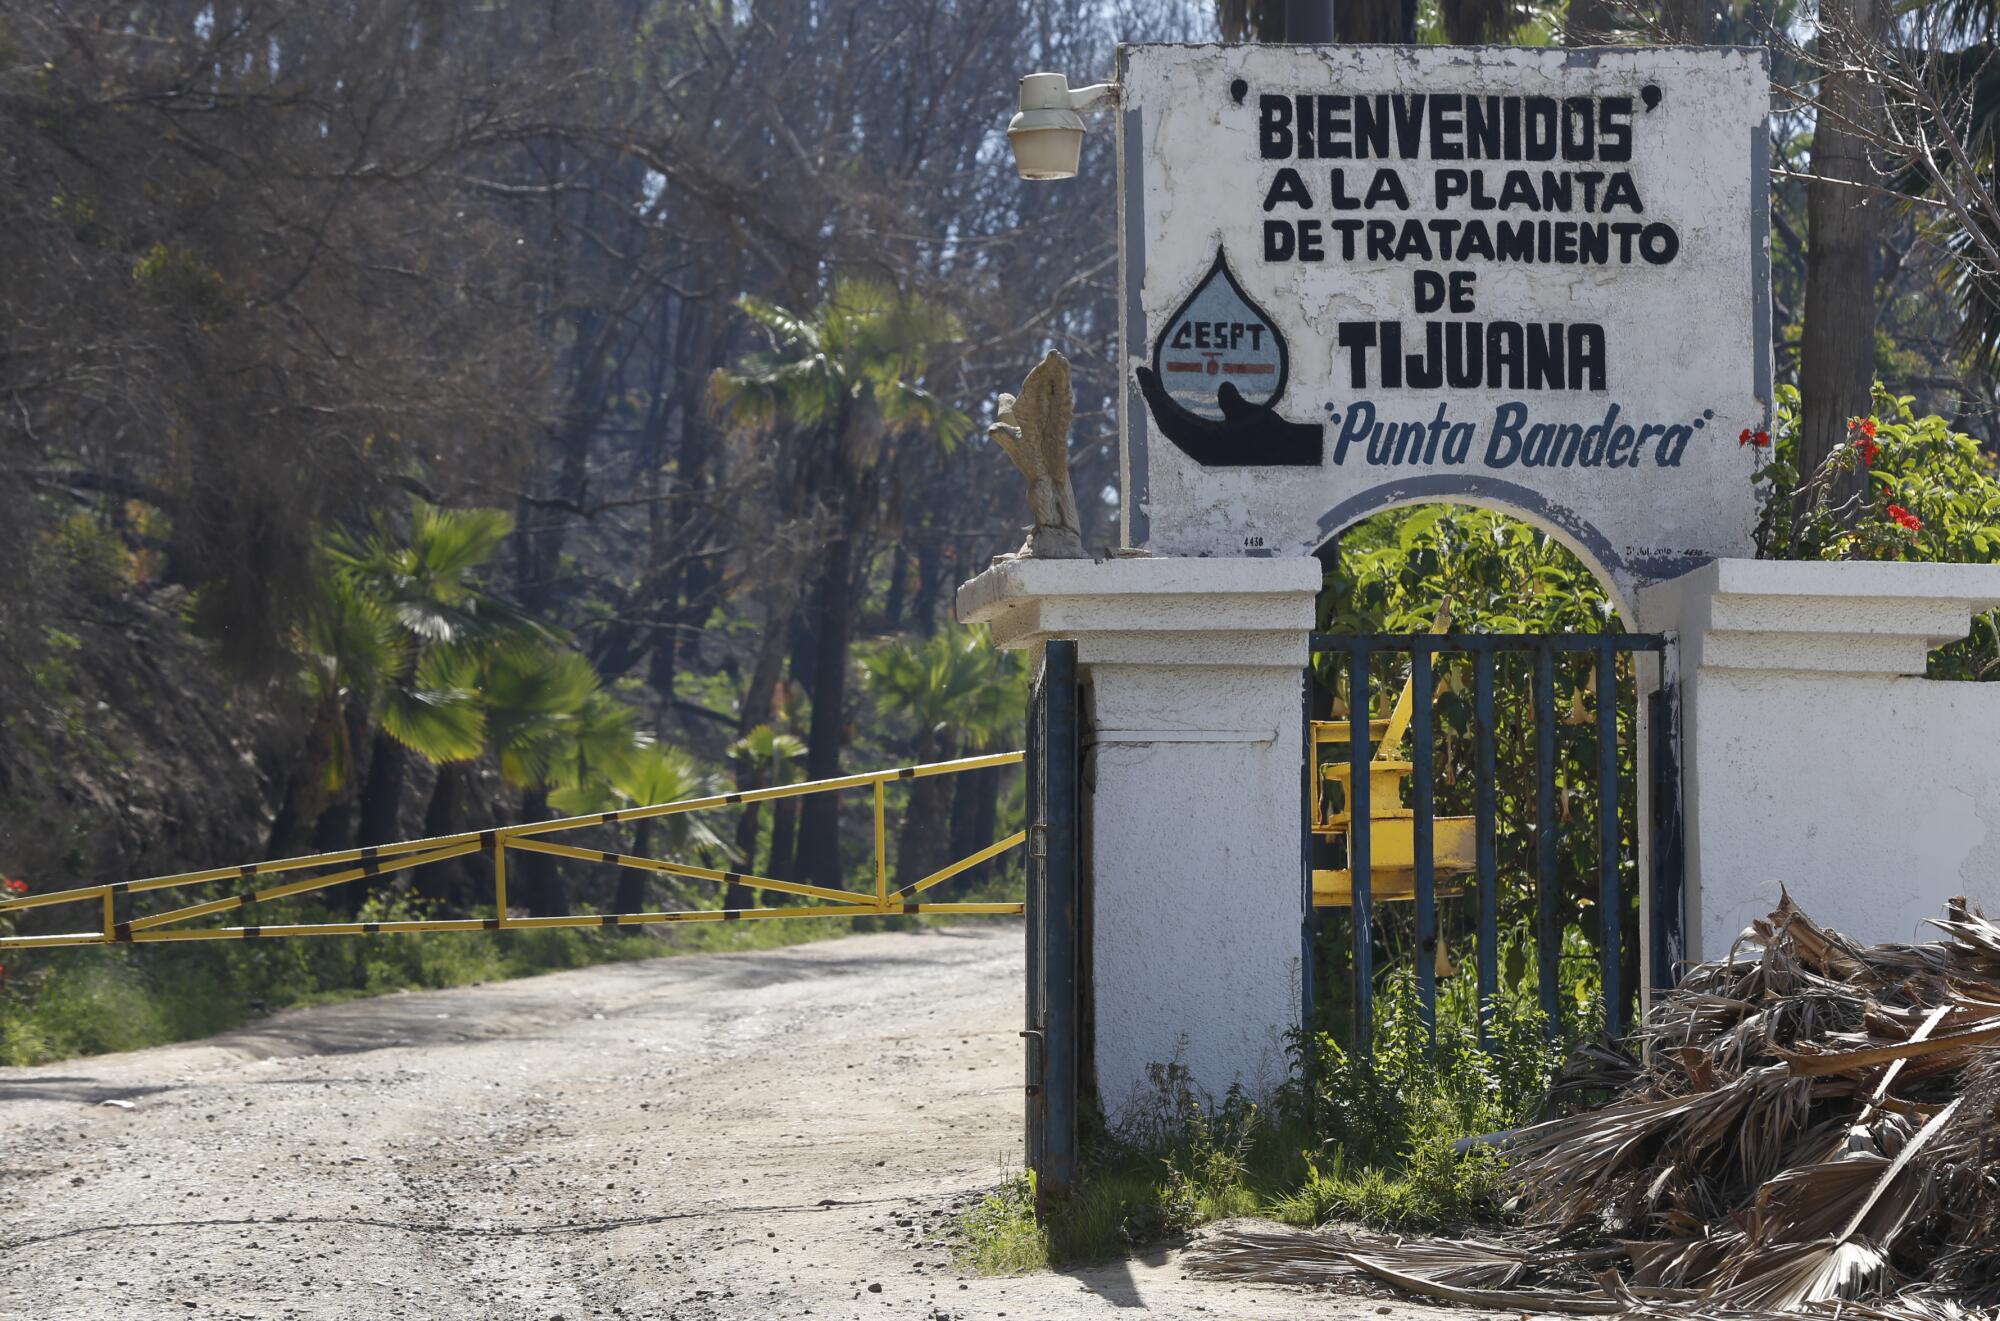 The front gates of San Antonio de los Buenos sewage treatment plant at Punta Bandera in 2017.